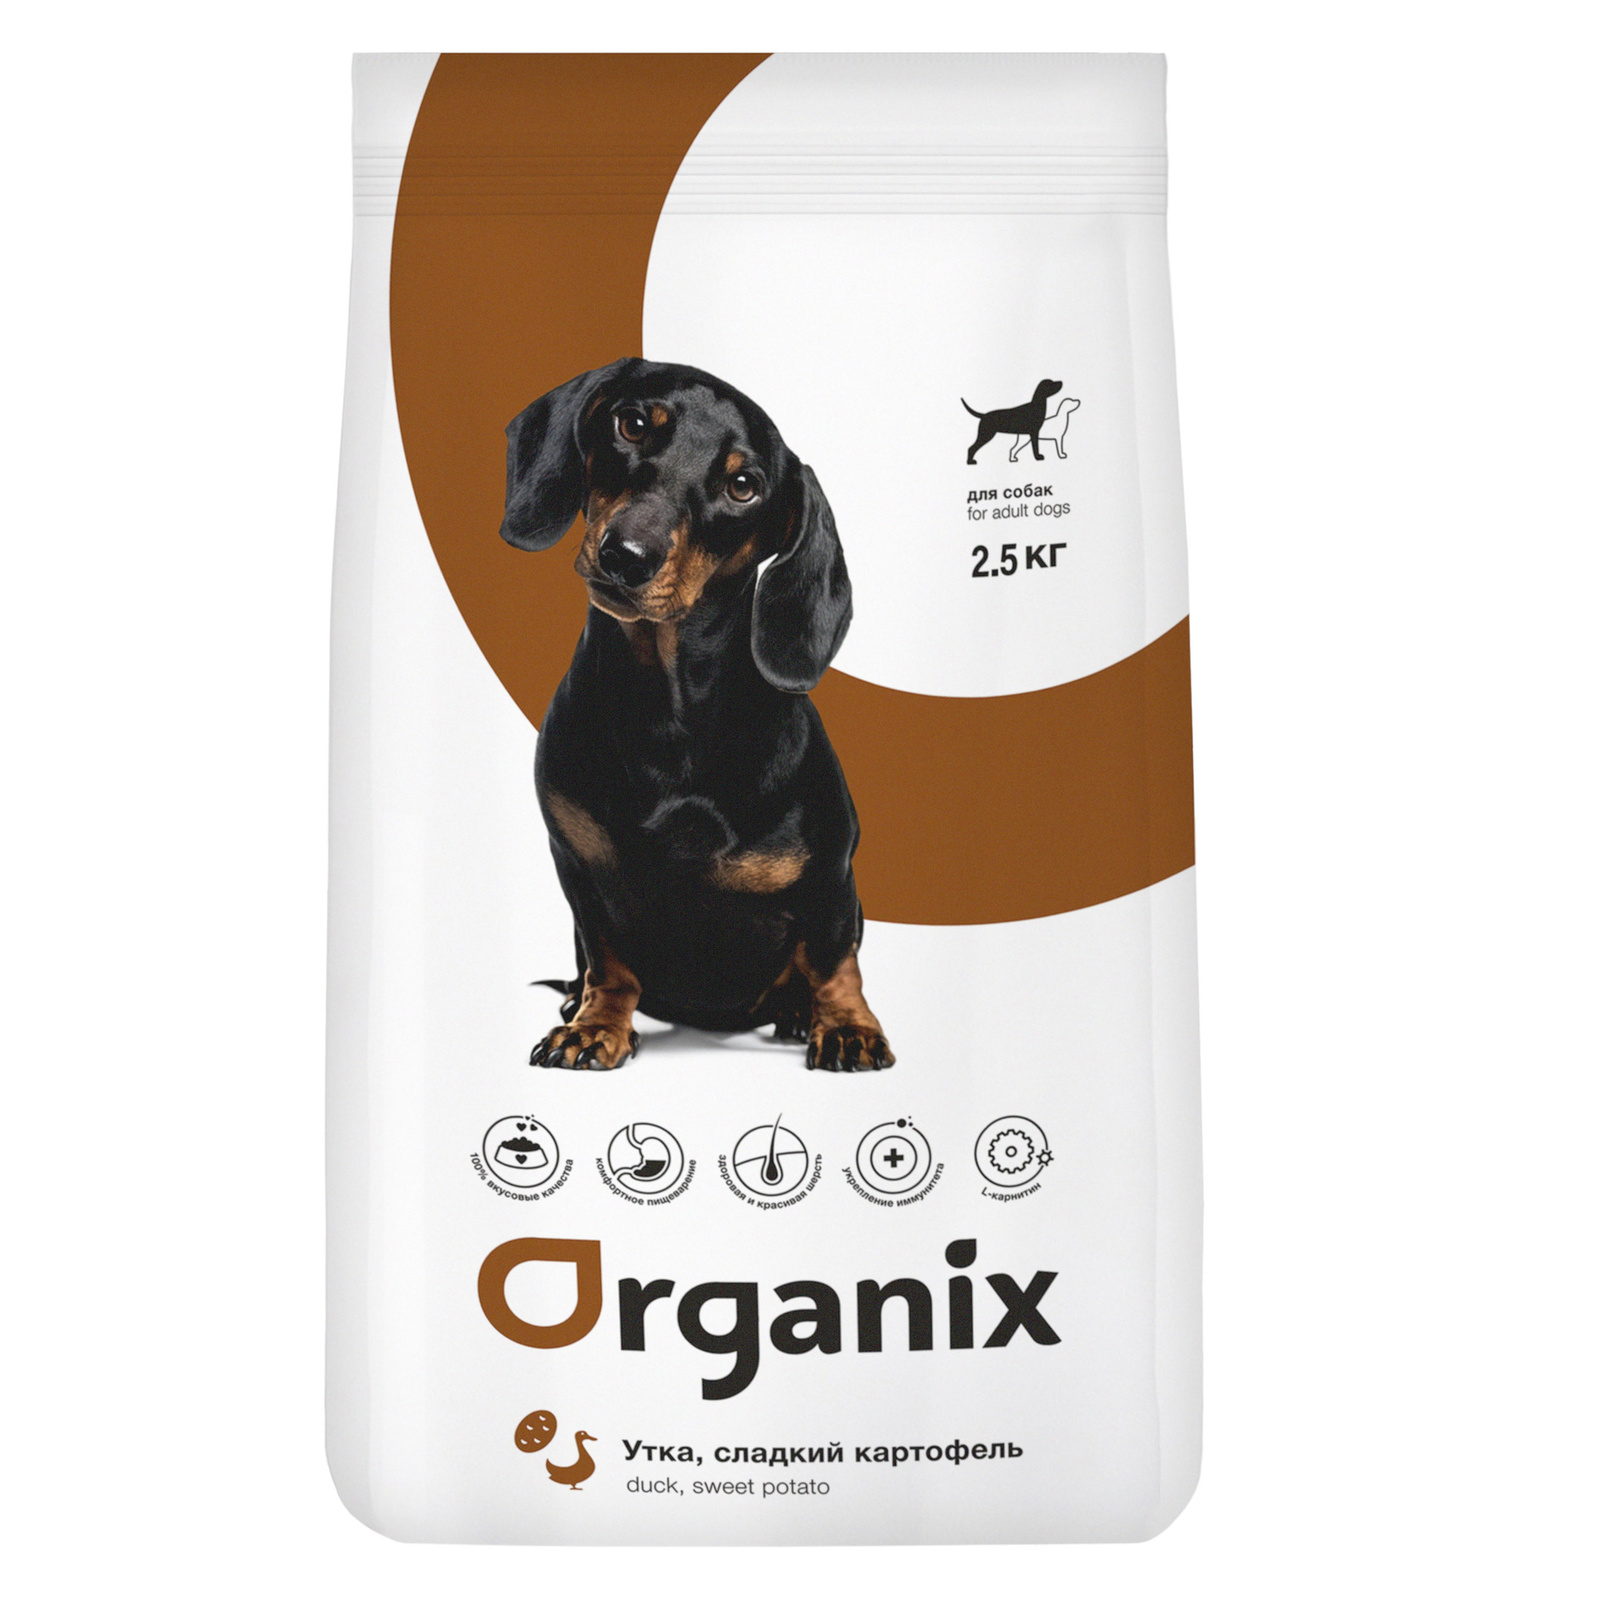 Для взрослых собак, с уткой и сладким картофелем (2,5 кг) Organix сухой корм Для взрослых собак, с уткой и сладким картофелем (2,5 кг) - фото 1